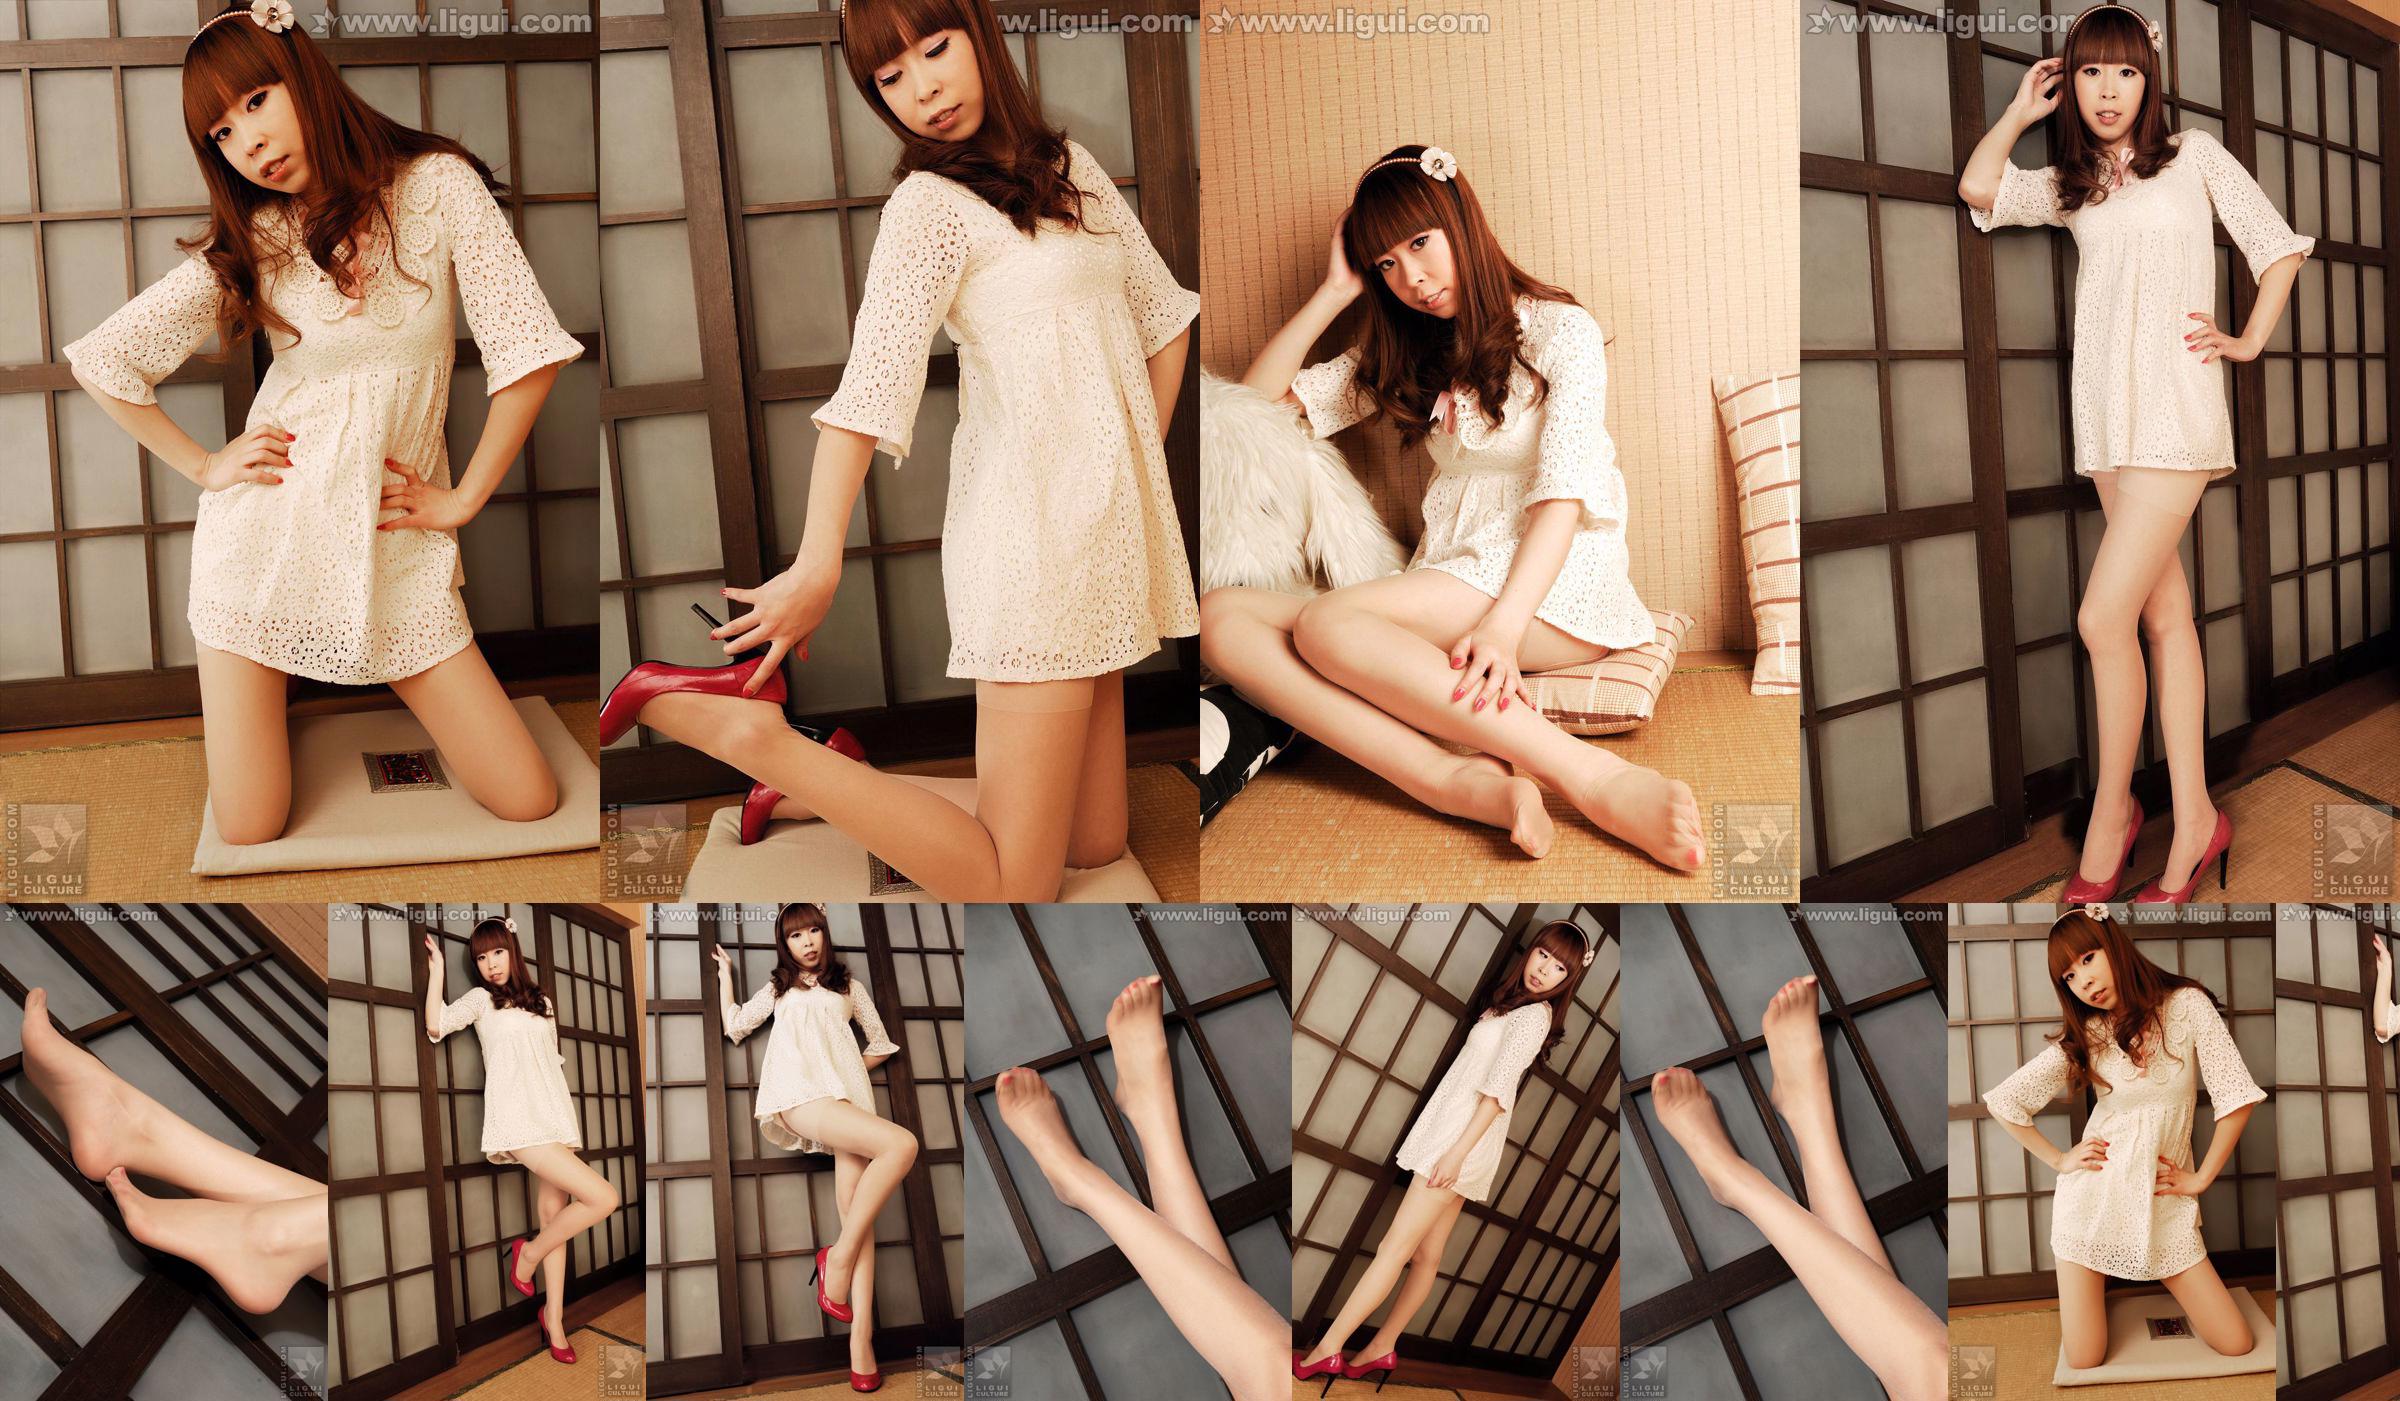 Modelo Vikcy "La tentación del estilo japonés" [丽 柜 LiGui] Fotos de piernas hermosas y pie de jade No.9e681a Página 3